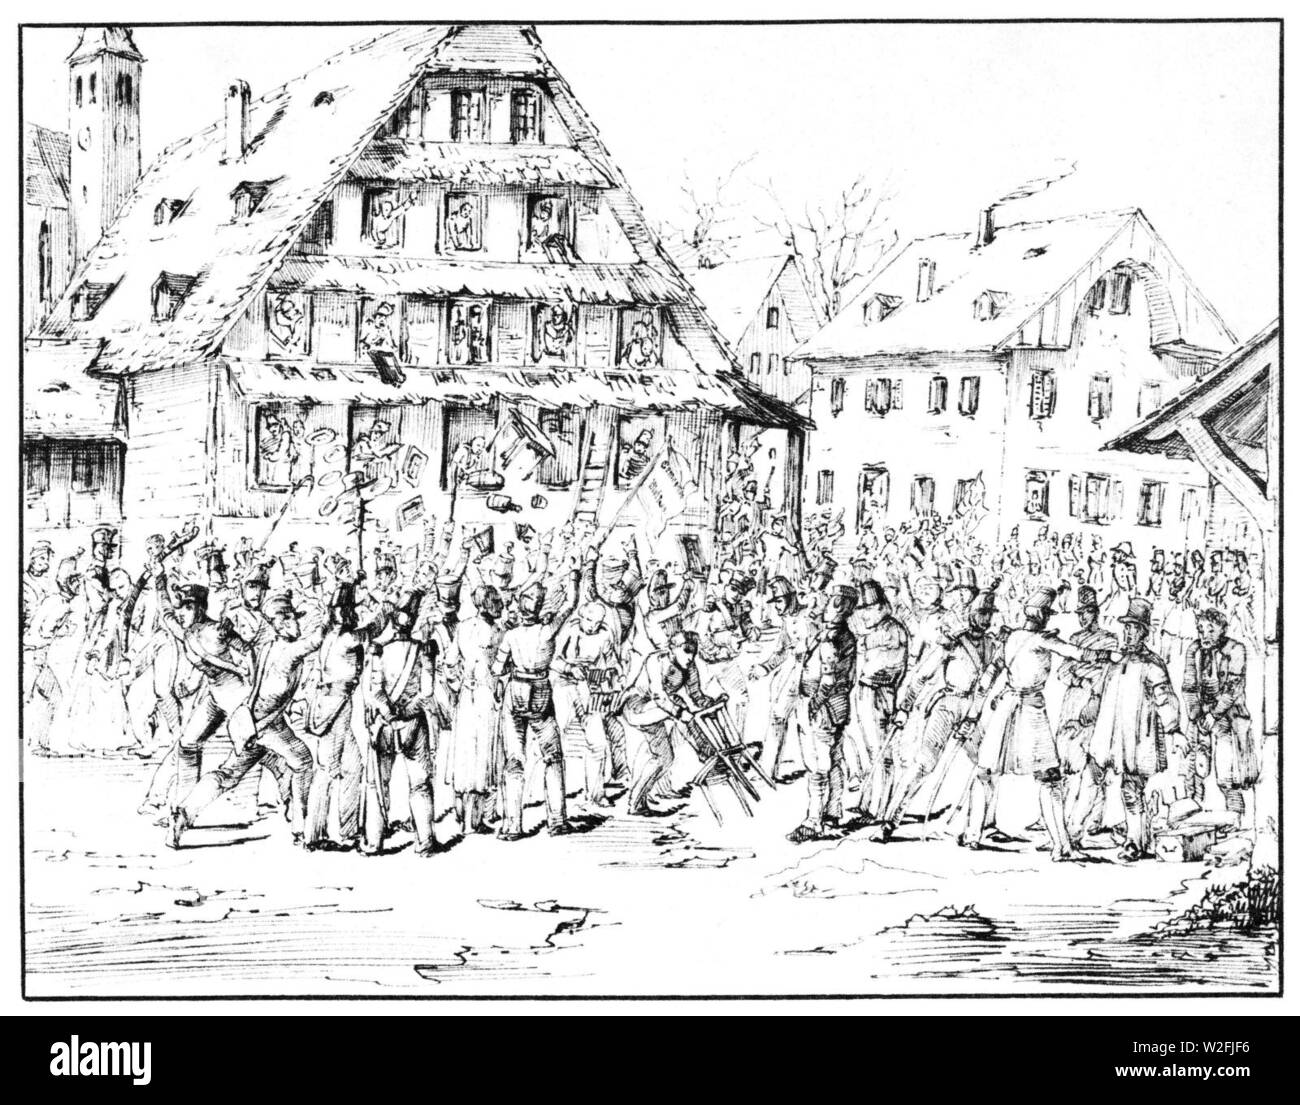 Charles-Alexandre Steinhäuslin 17 - Des soldats de la brigade Frei pillent l' auberge du Kl6sterli, à Malters (25.11.1847). Stock Photo